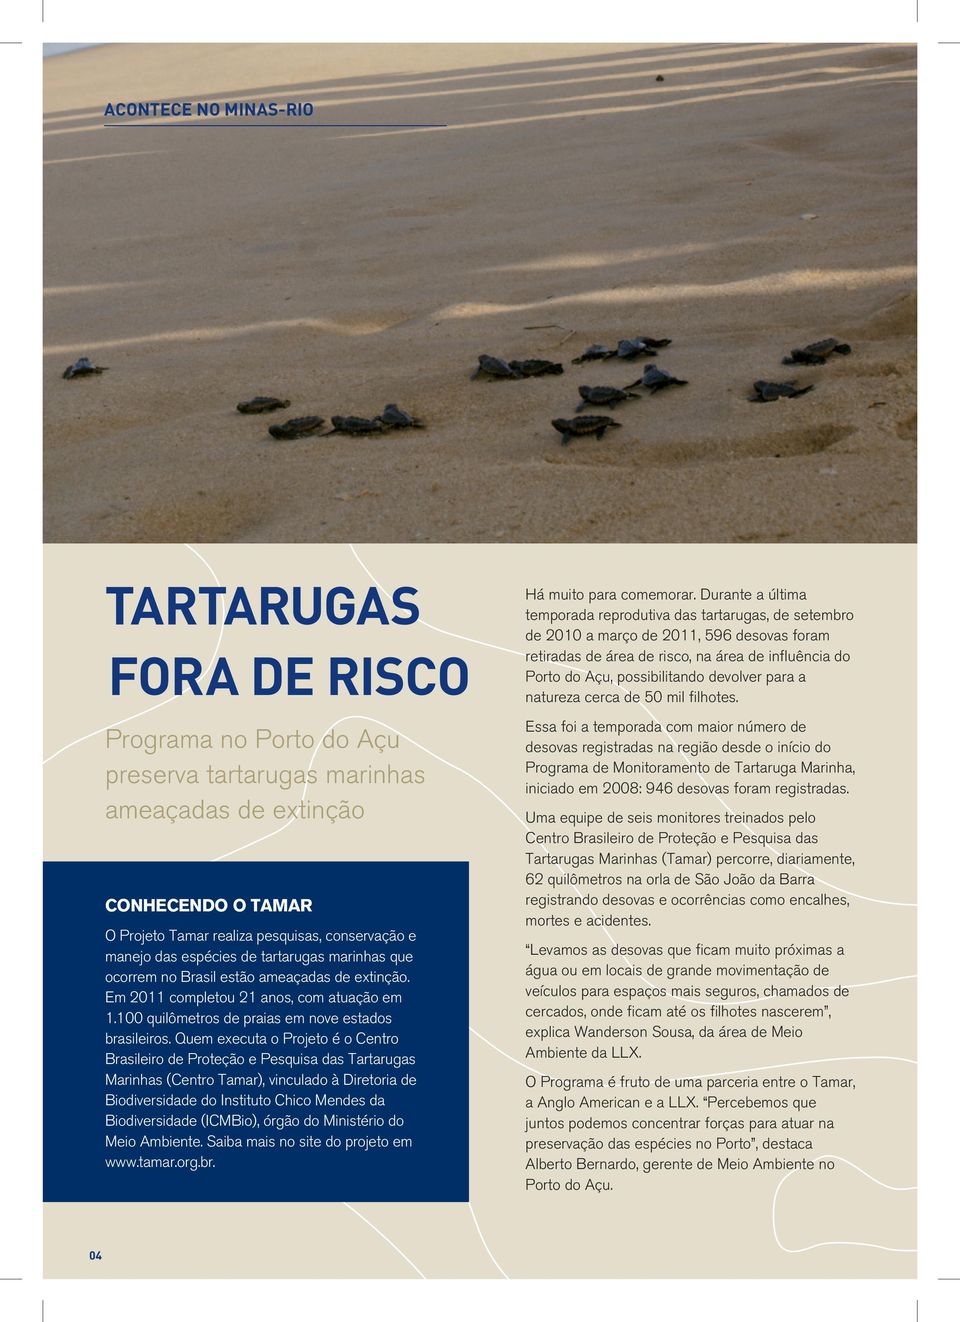 Quem executa o Projeto é o Centro Brasileiro de Proteção e Pesquisa das Tartarugas Marinhas (Centro Tamar), vinculado à Diretoria de Biodiversidade do Instituto Chico Mendes da Biodiversidade